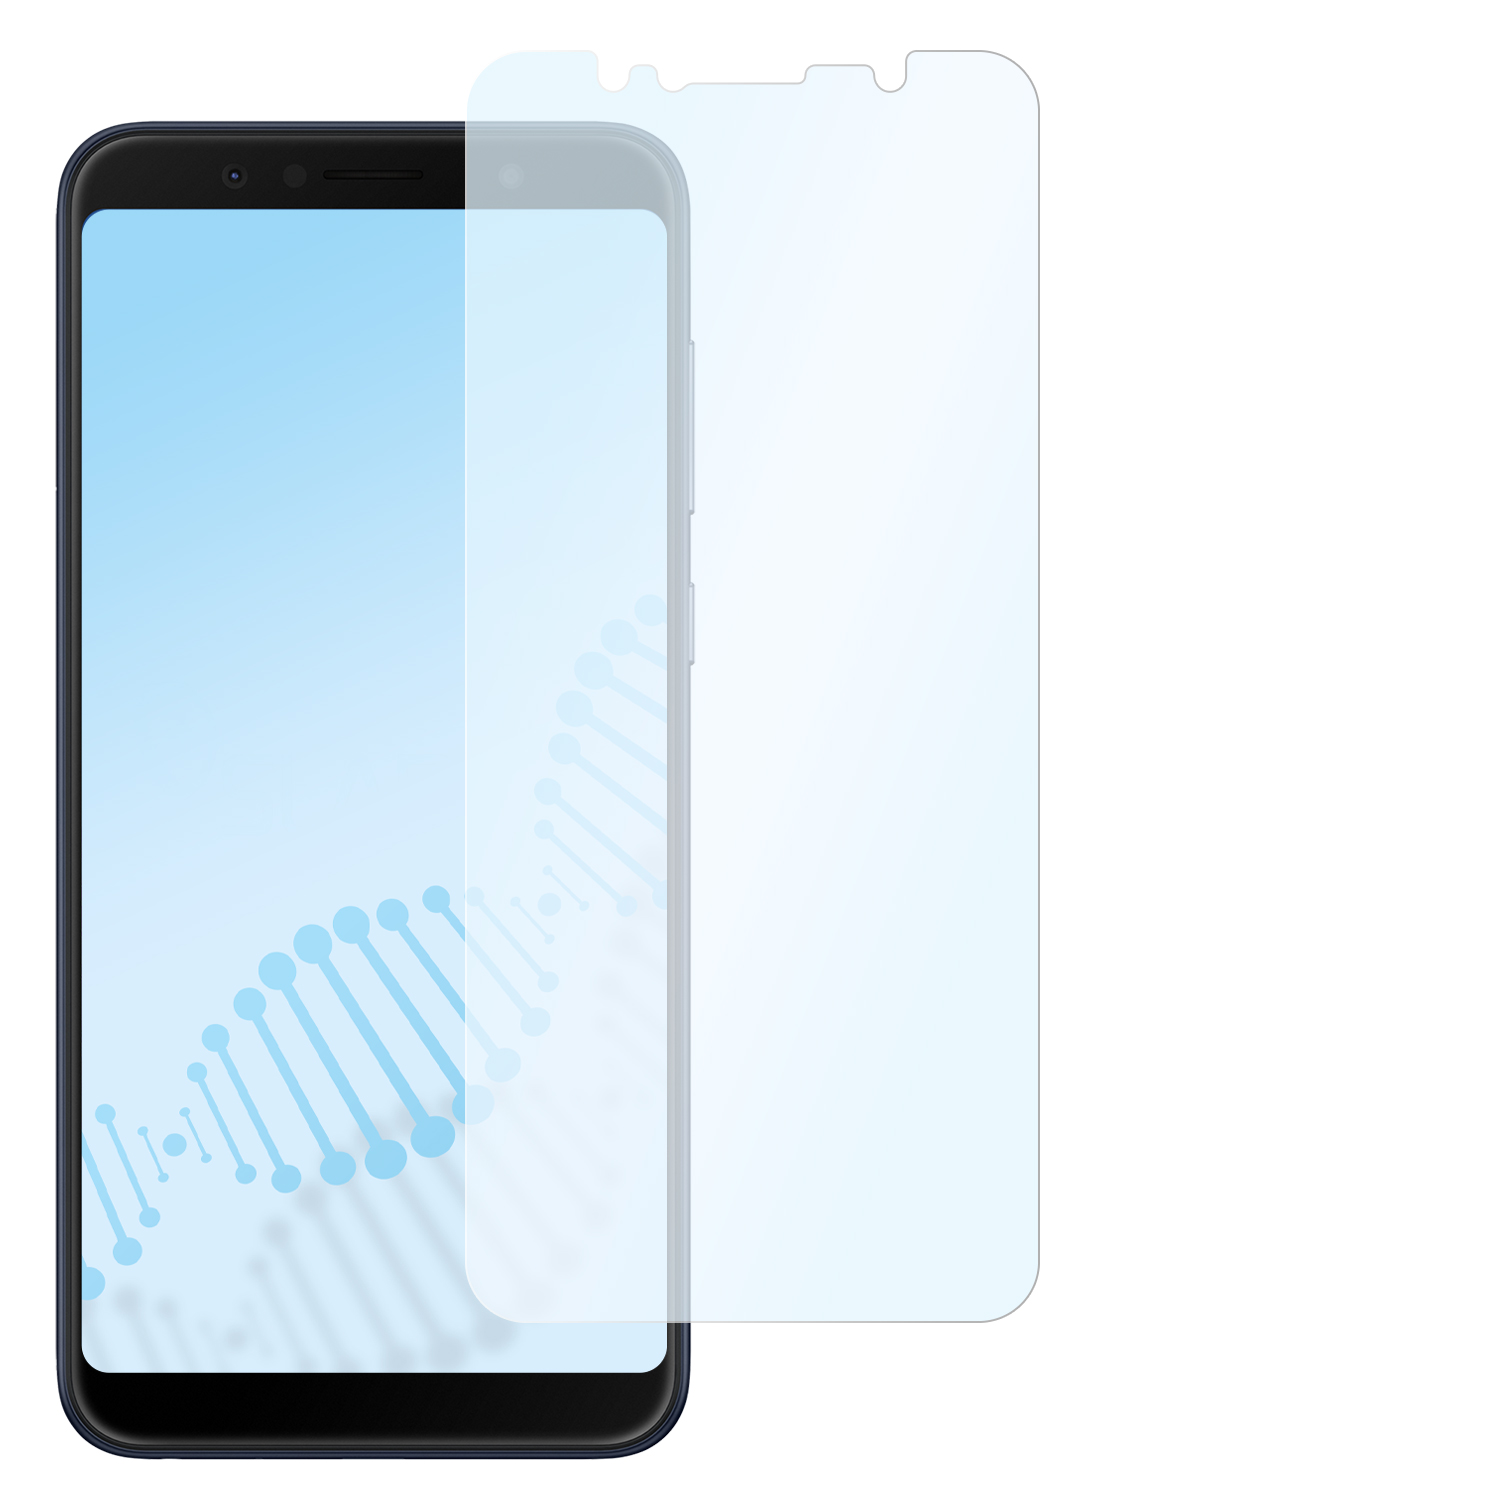 SLABO antibakterielle flexible Hybridglasfolie Displayschutz(für Max Asus ZenFone (M1)) Pro